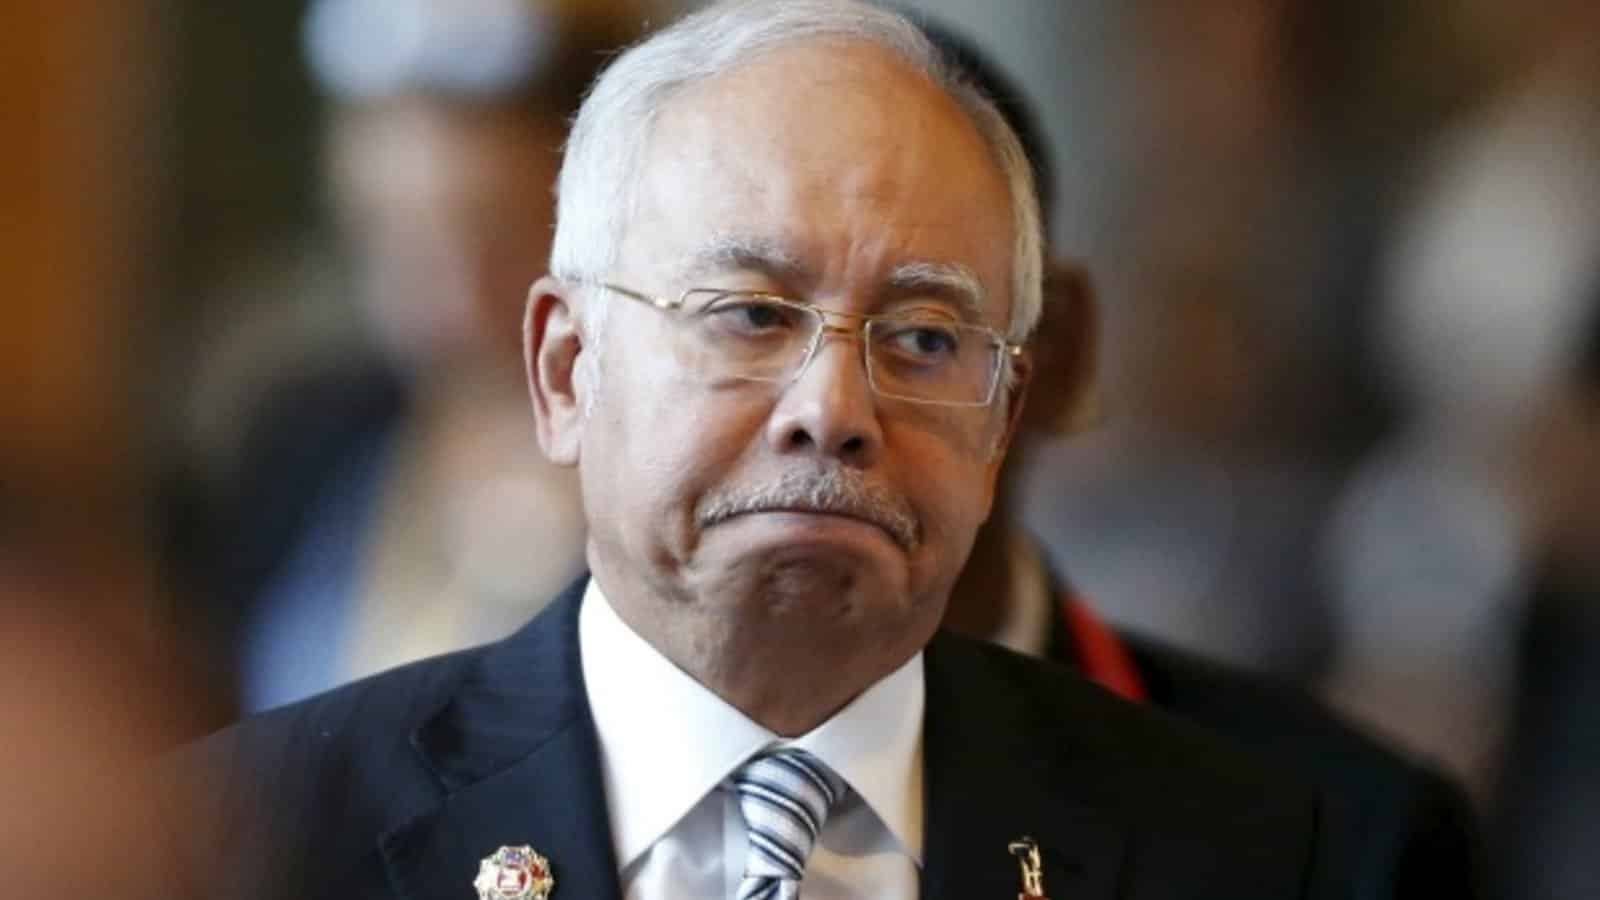 Penyokong kecewa BN sokong Belanjawan, Najib bagi alasan “kekurangan masa”